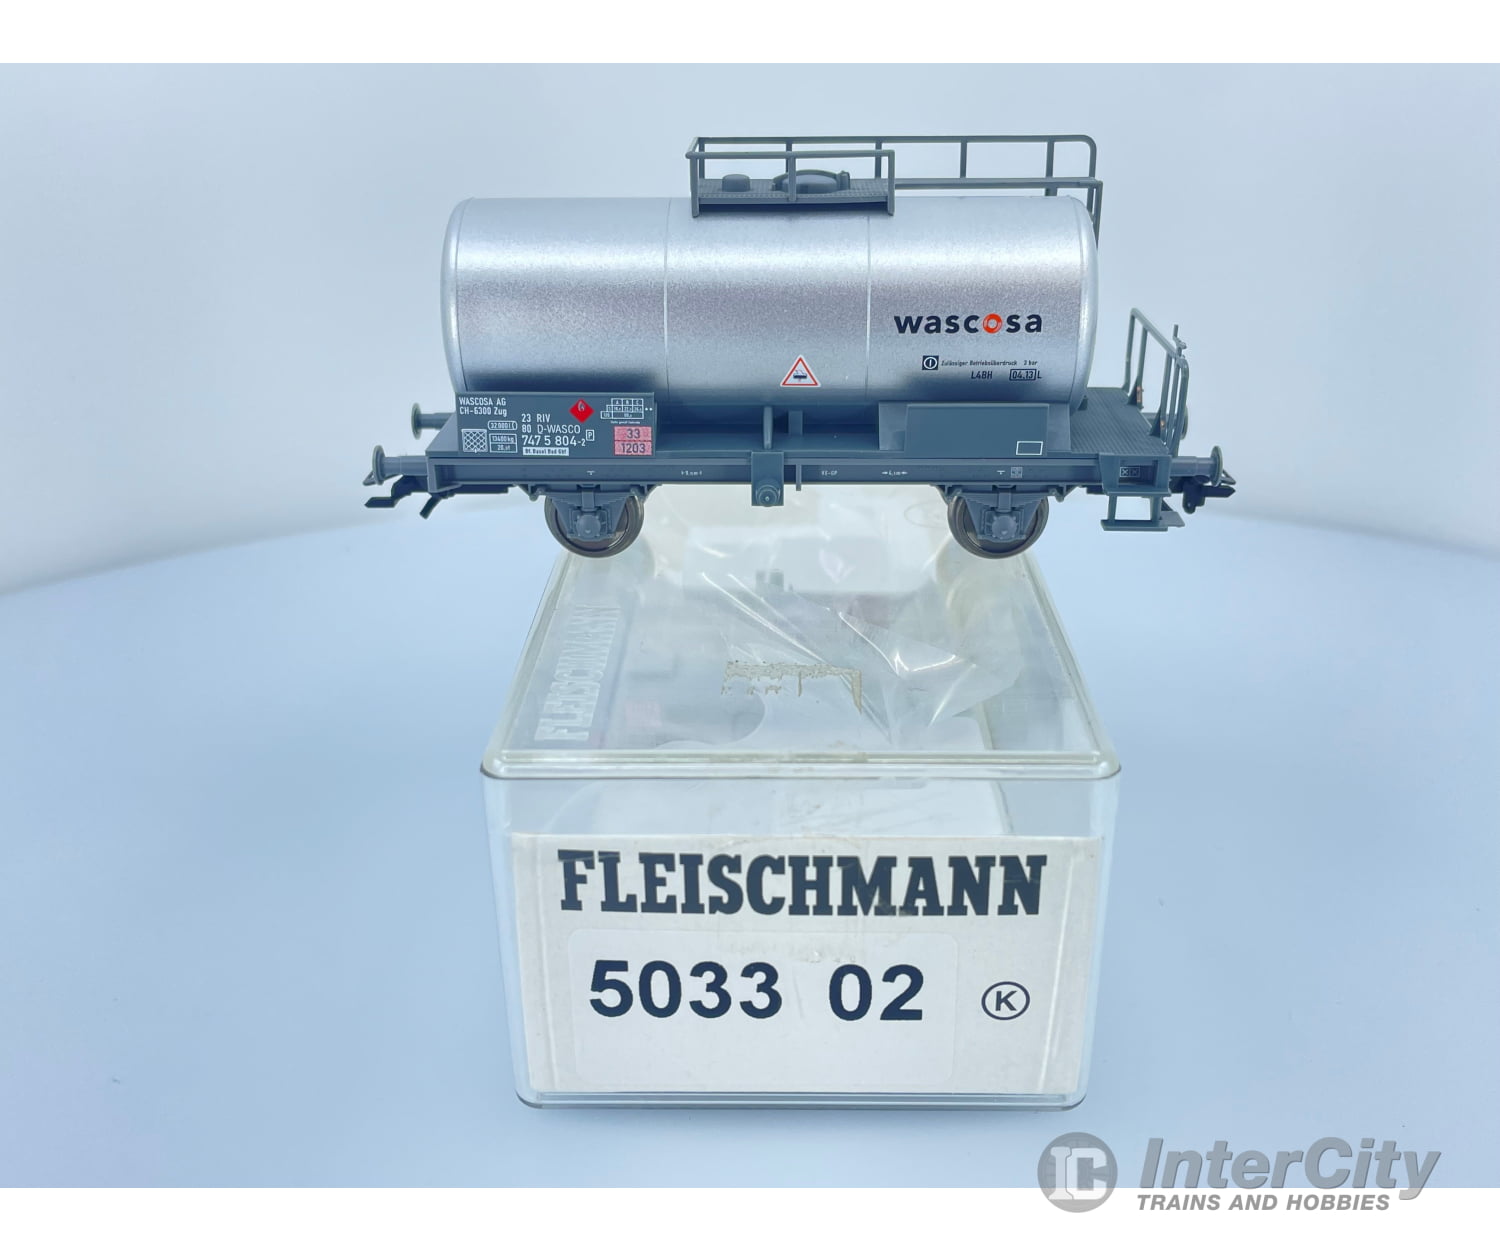 Fleischmann 503302 Ho Sbb Tank Car ’Wascosa’ European Freight Cars